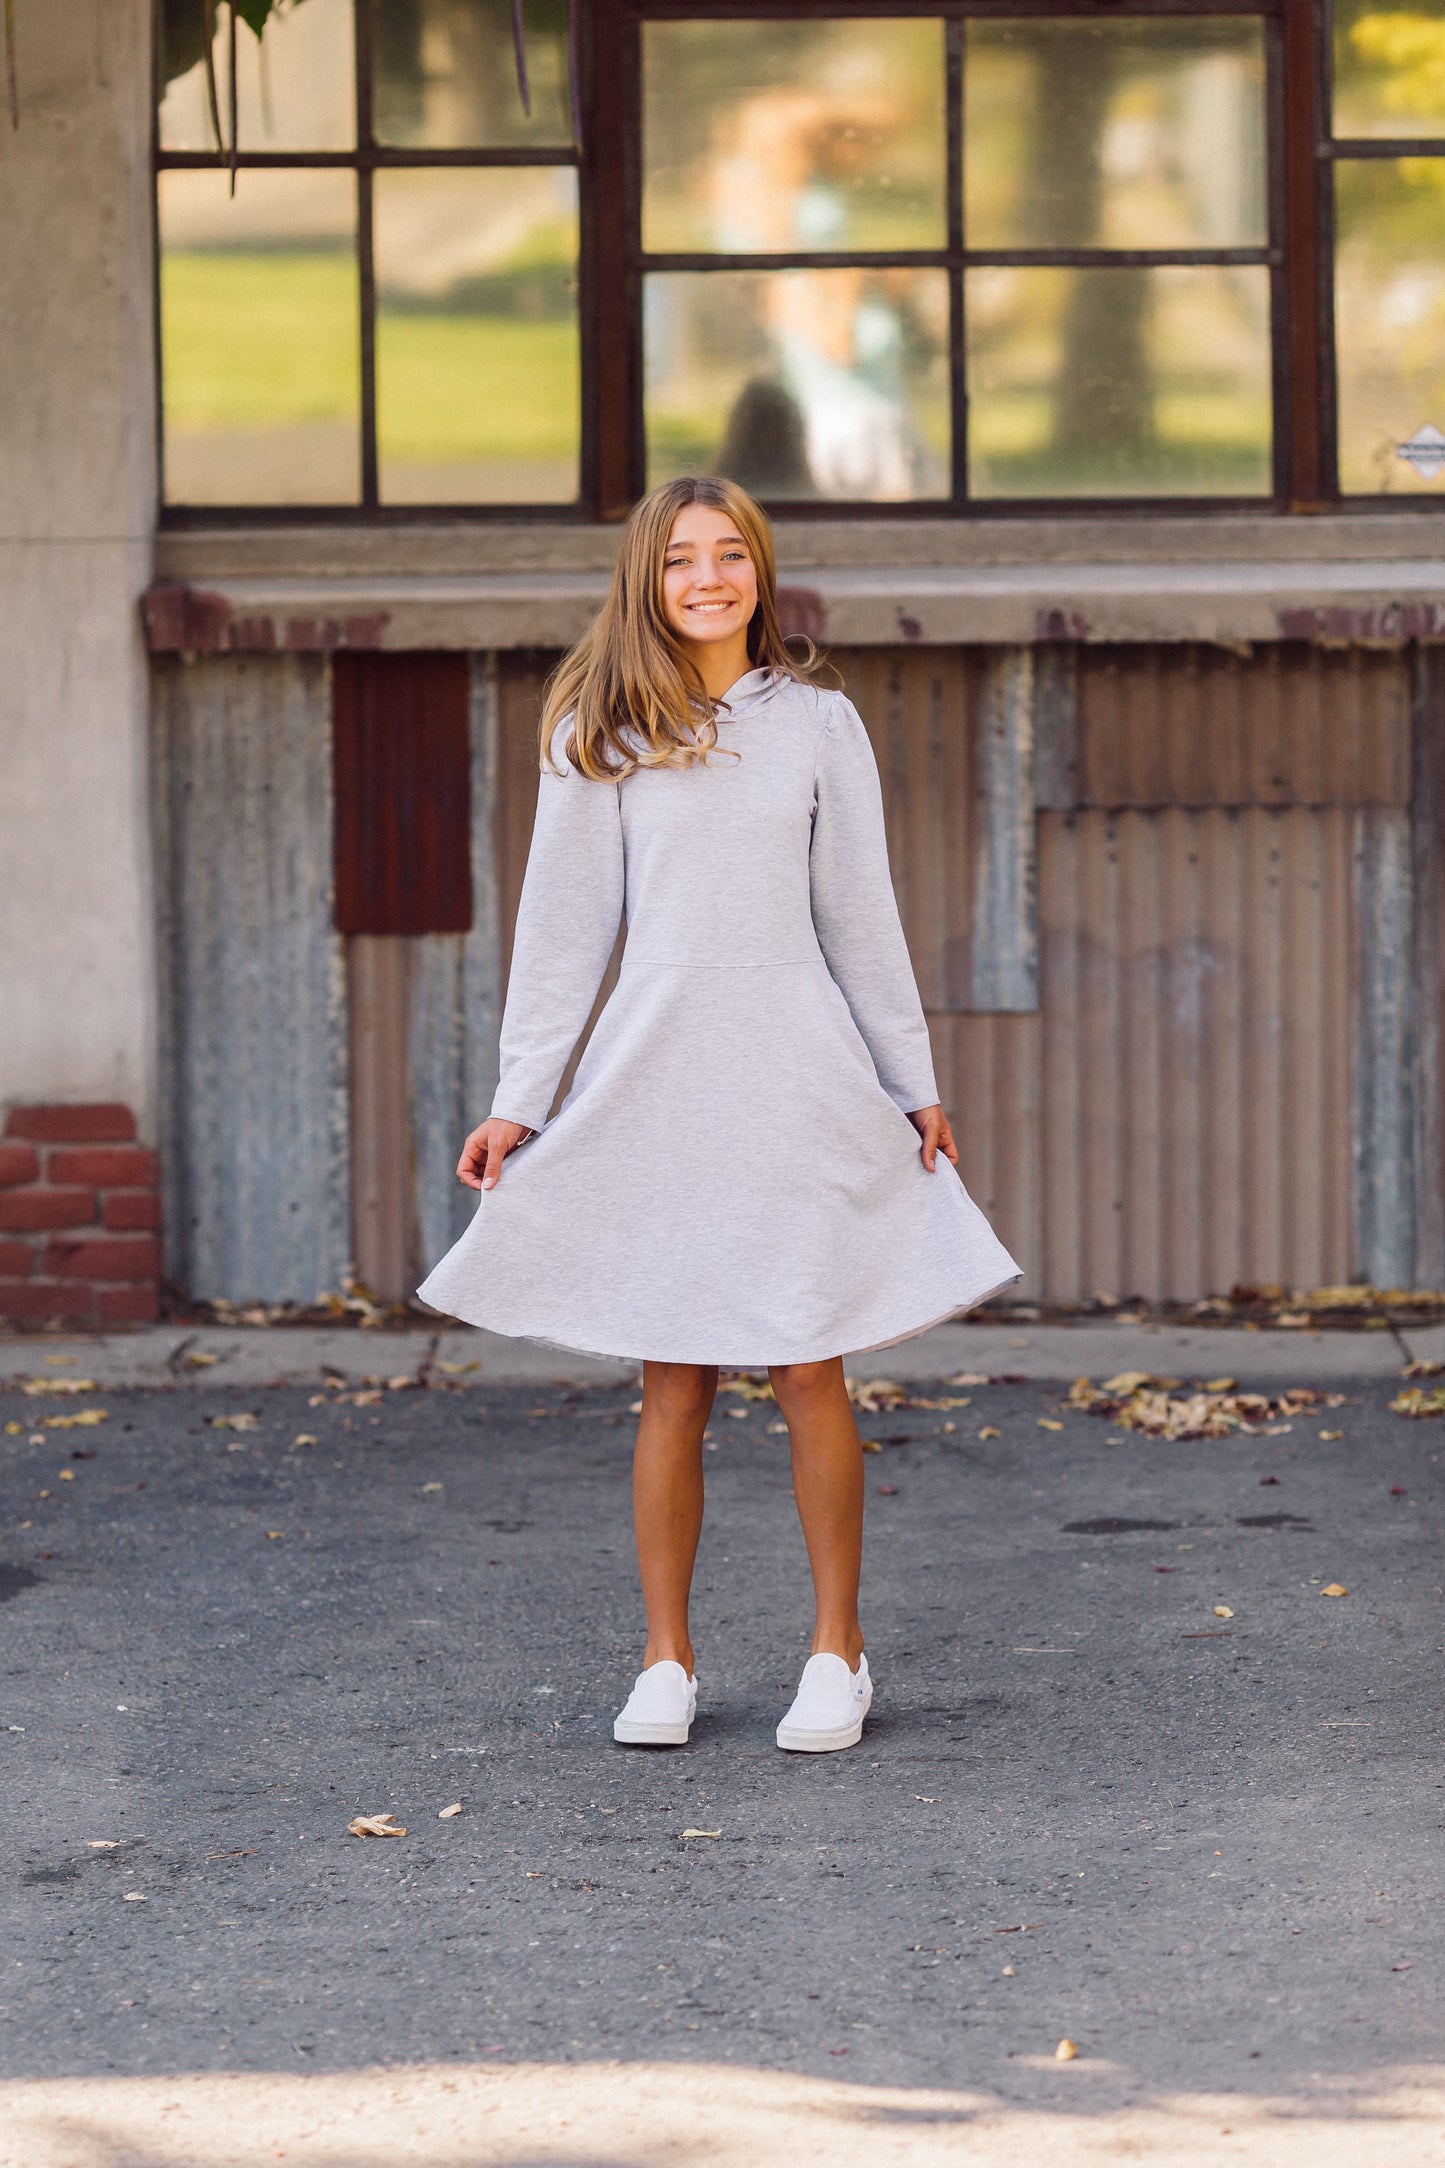 Piper Hoodie Dress in Grey